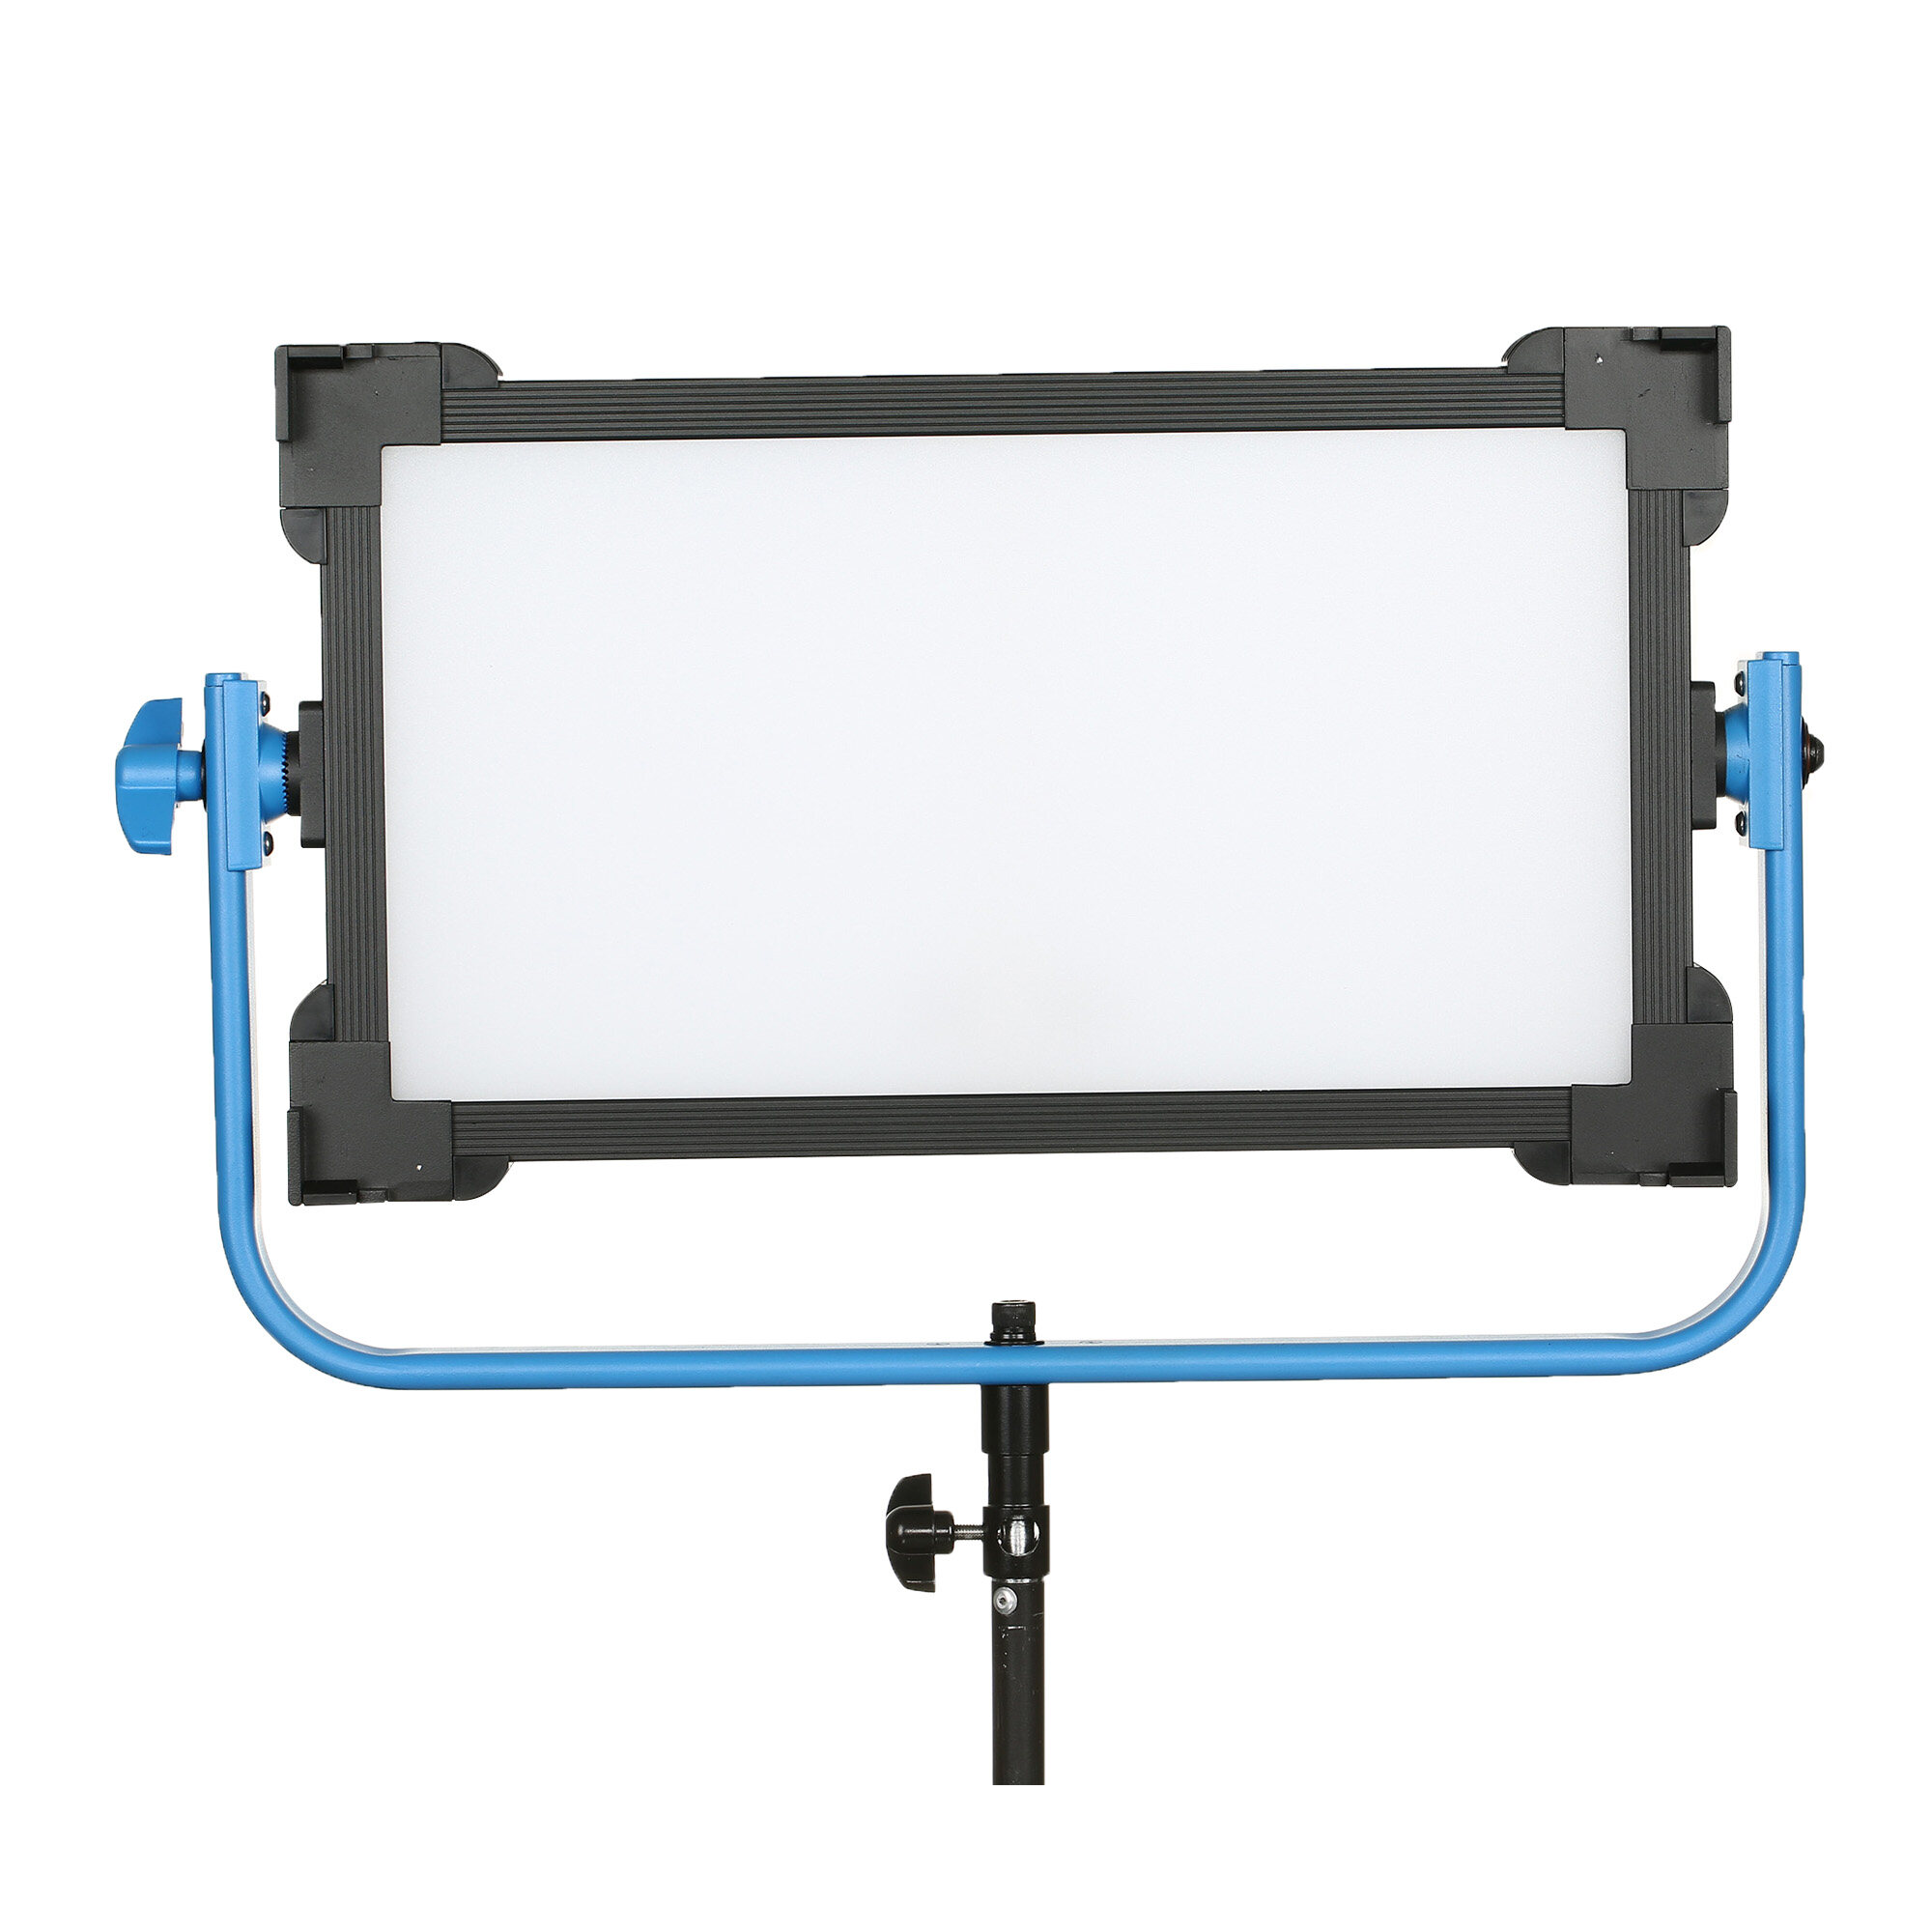 video panel light oem, video panel light odm, video panel light customize, soft led panel distributor, soft led panel company